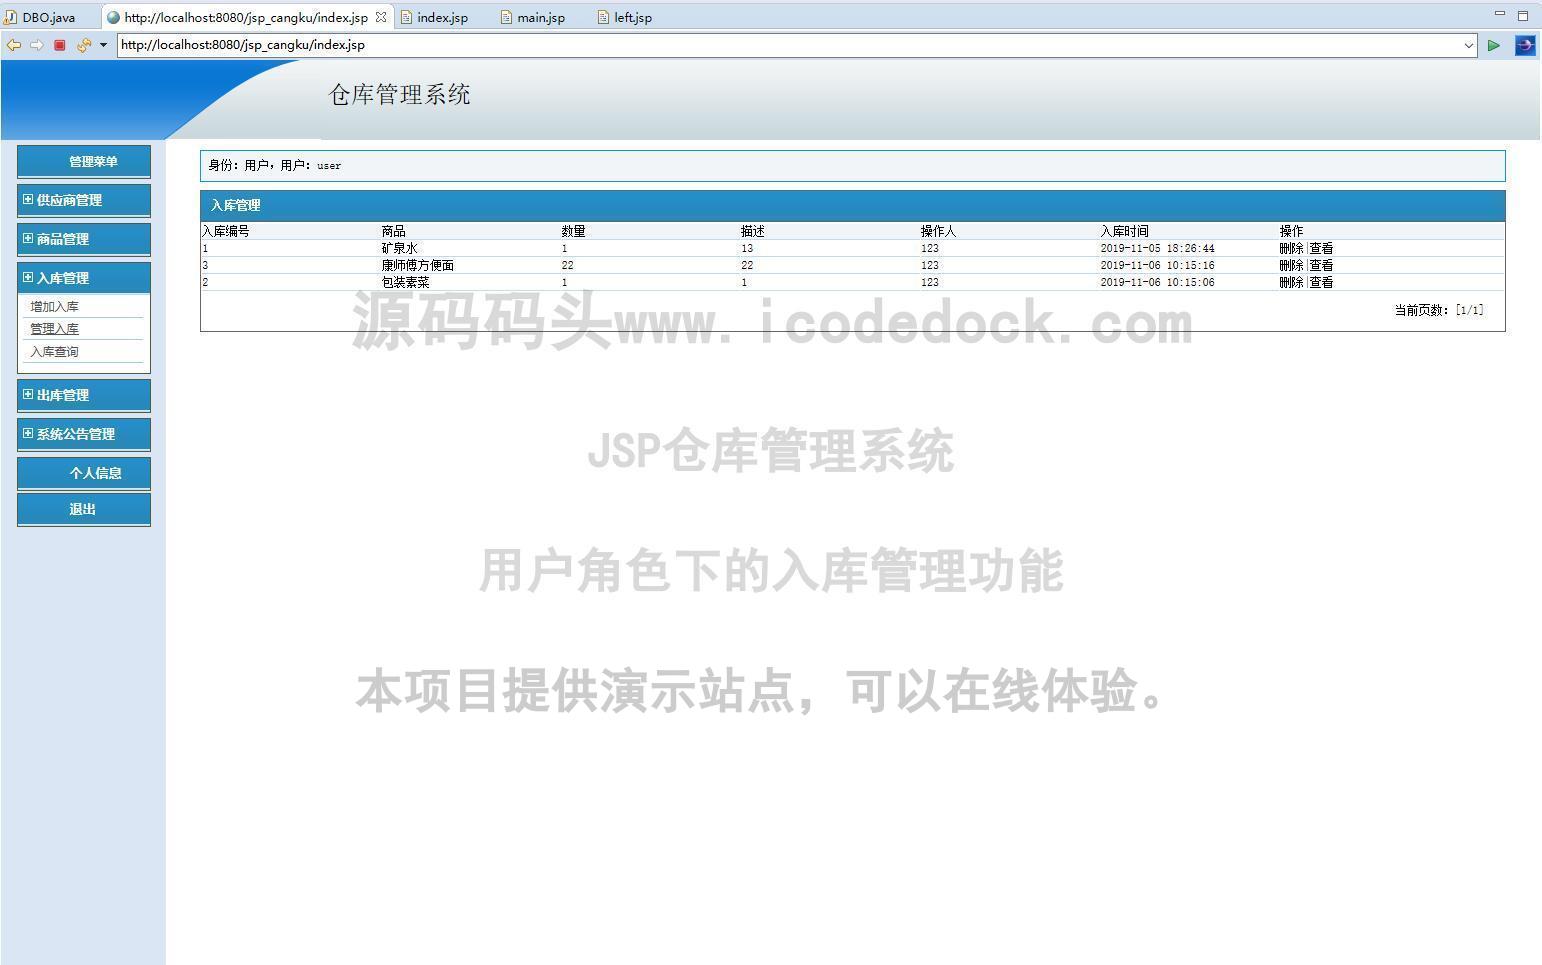 源码码头-JSP仓库管理系统-用户角色-入库管理